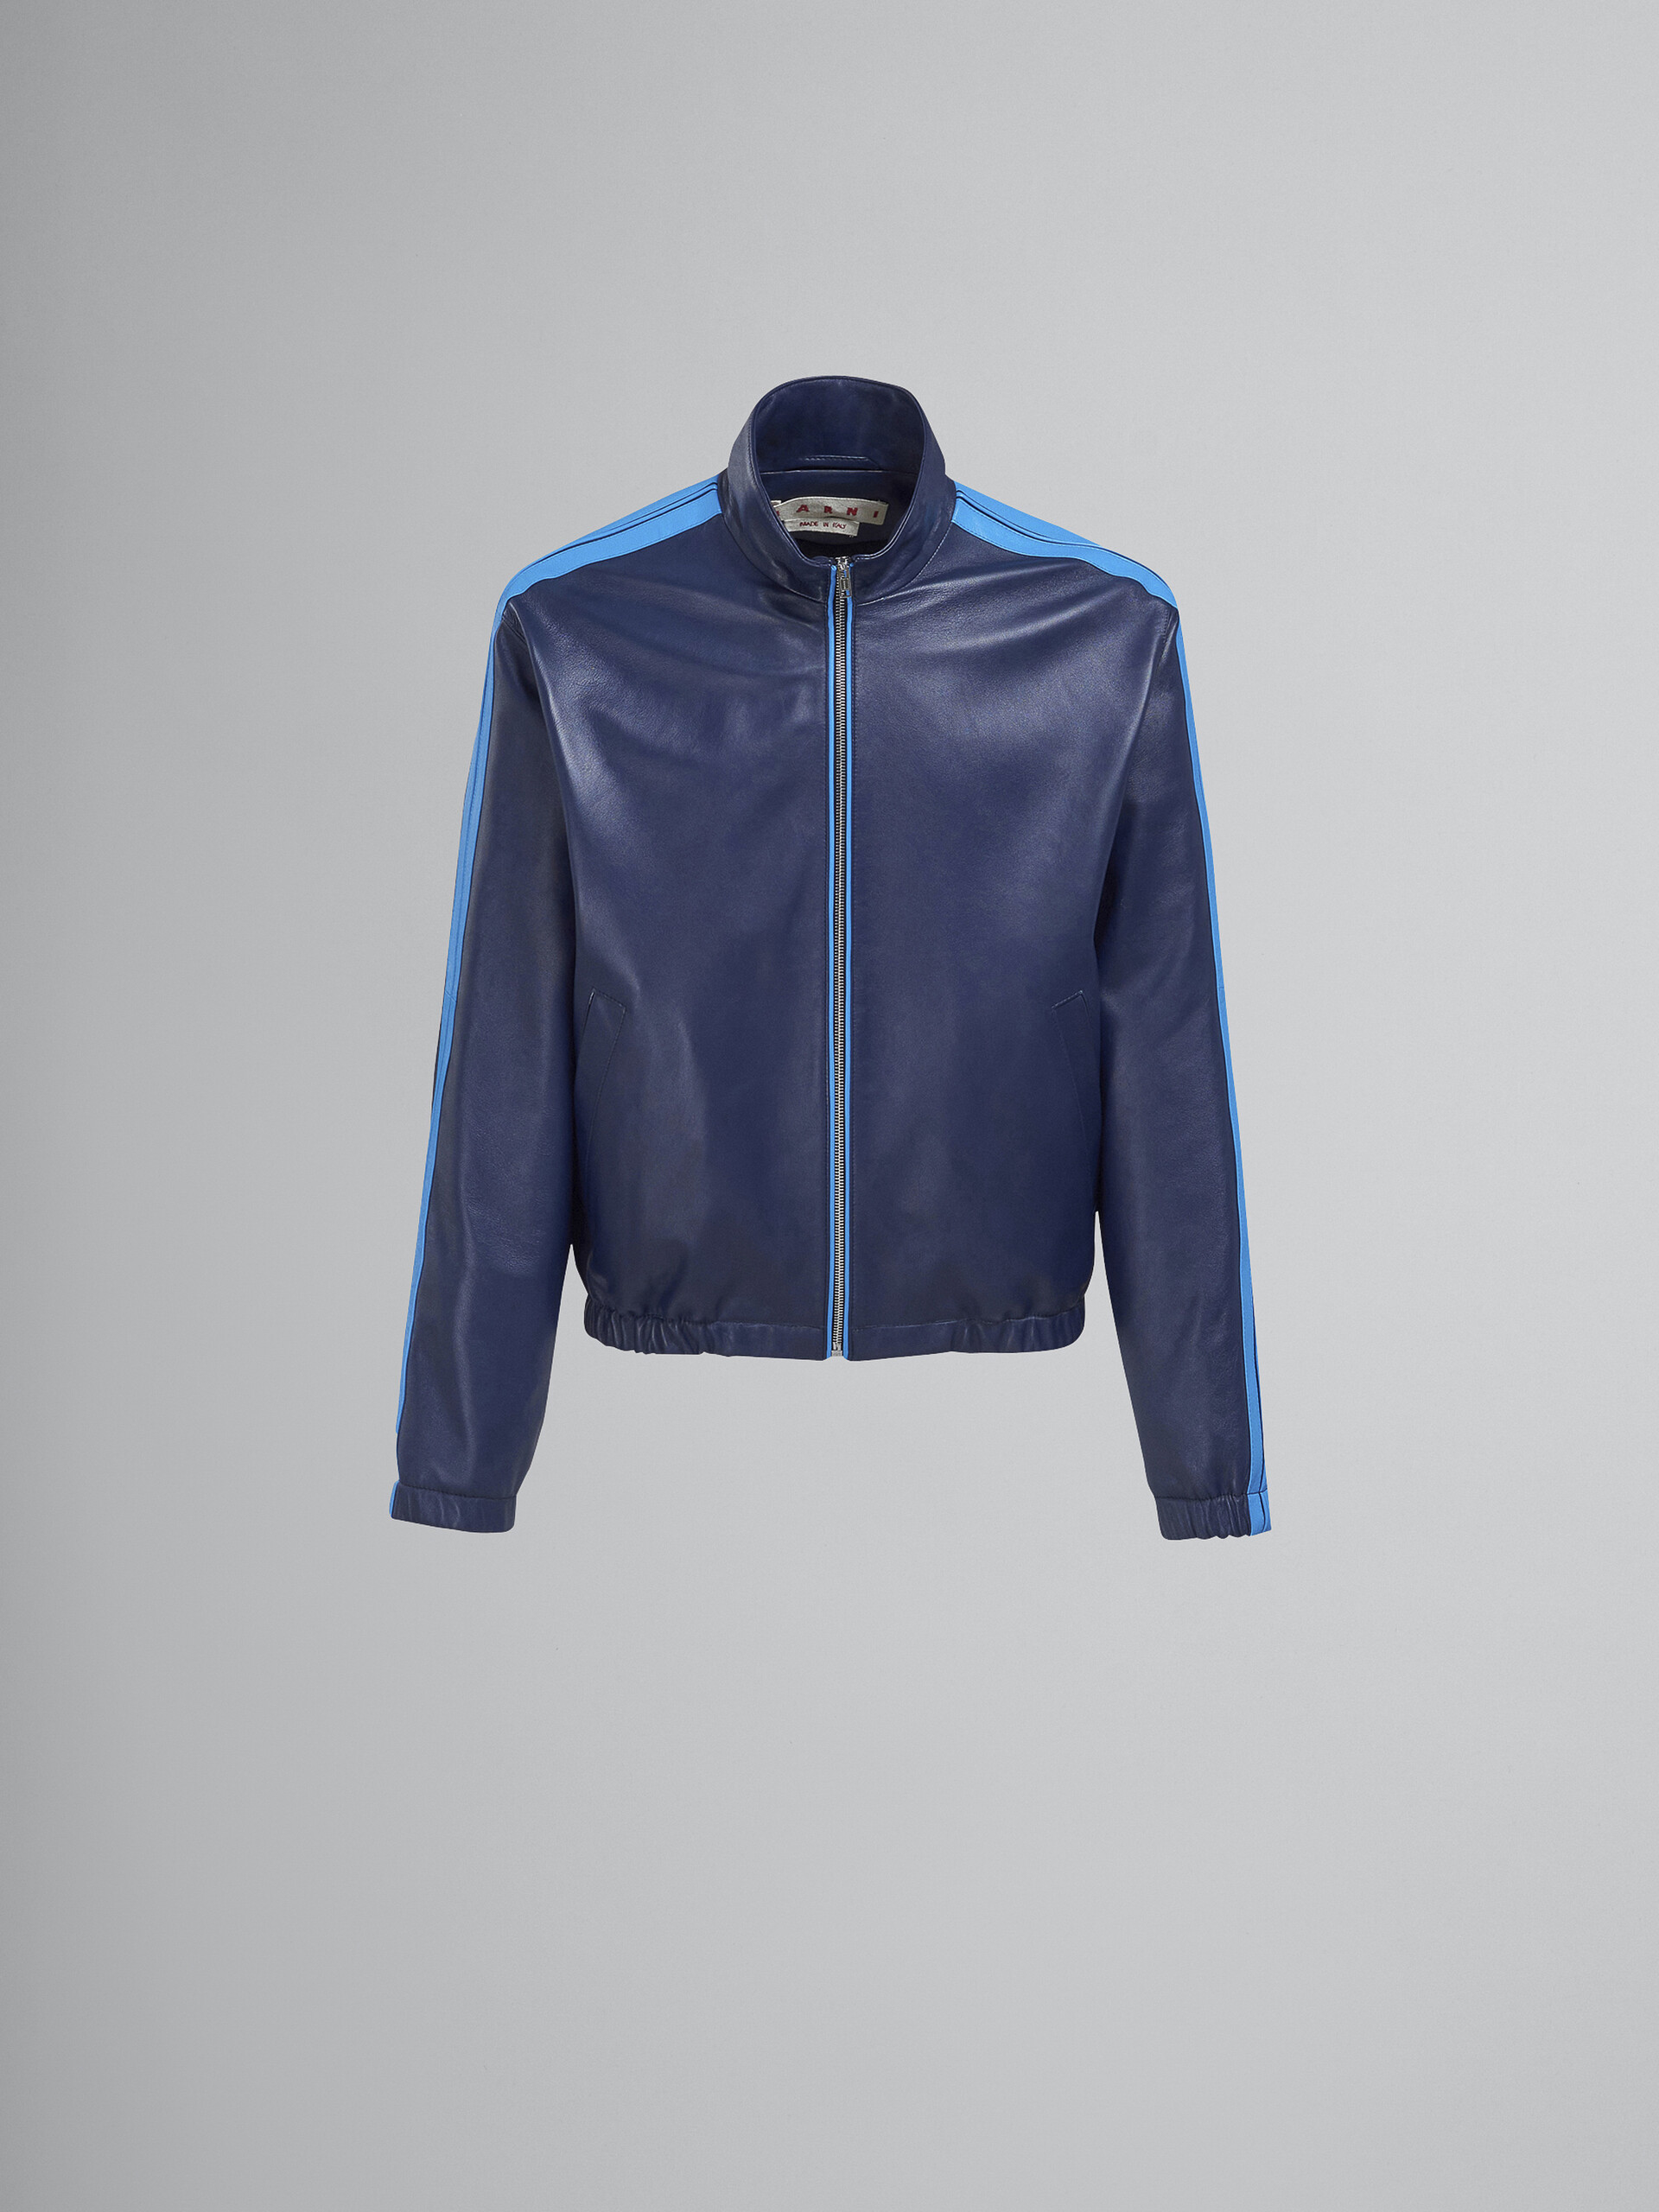 Nappa leather jacket - Jackets - Image 1